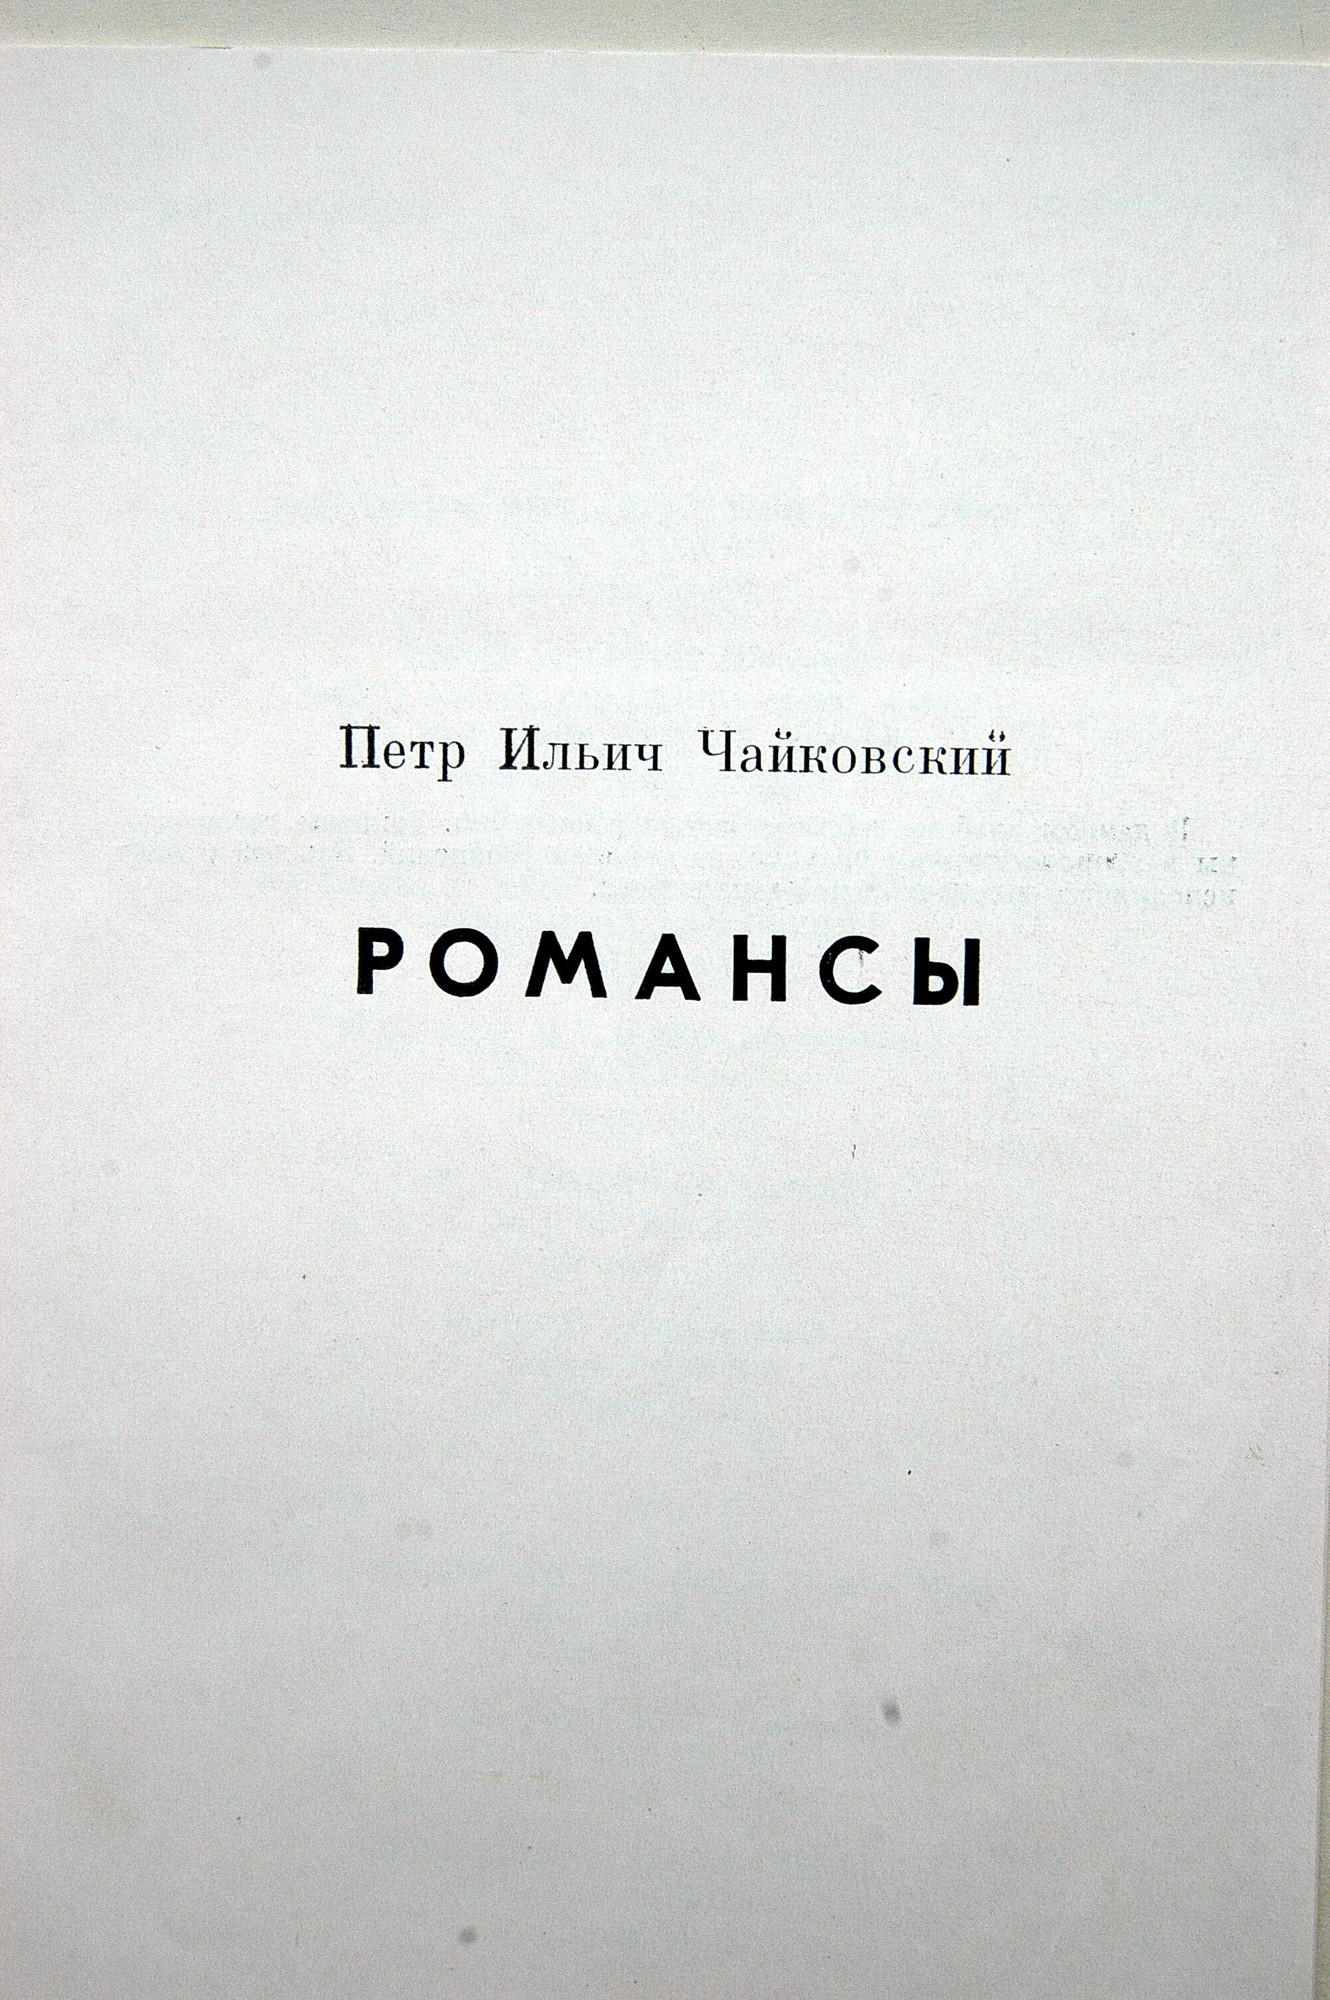 П. ЧАЙКОВСКИЙ (1840–1893): Полное собрание романсов (1/6)